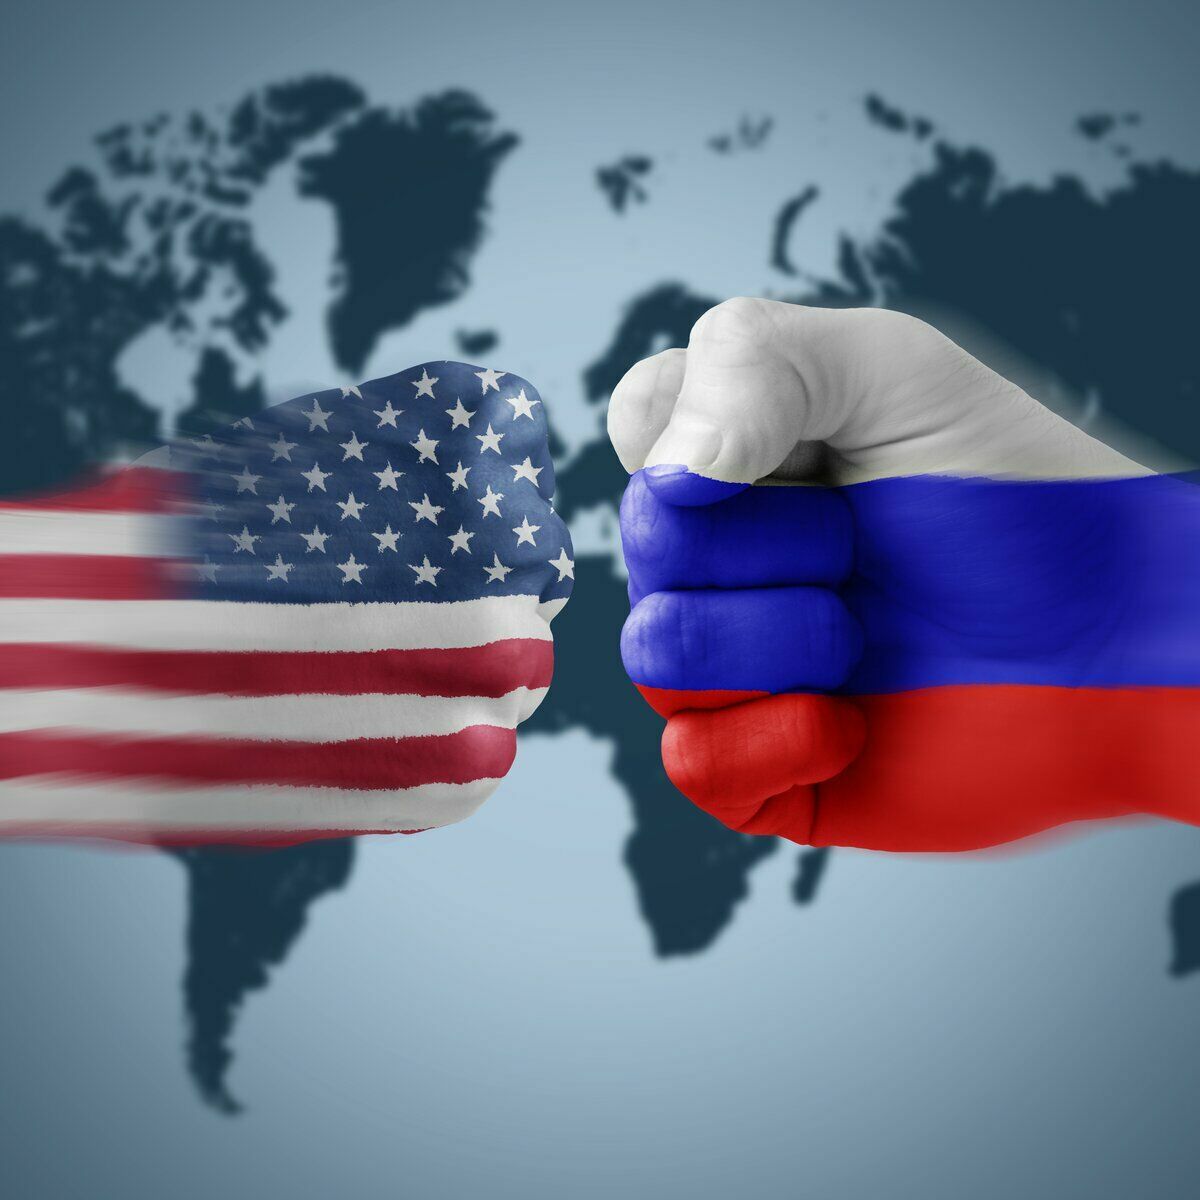 МИД: объявление России спонсором терроризма окончательно разрушит отношения с США